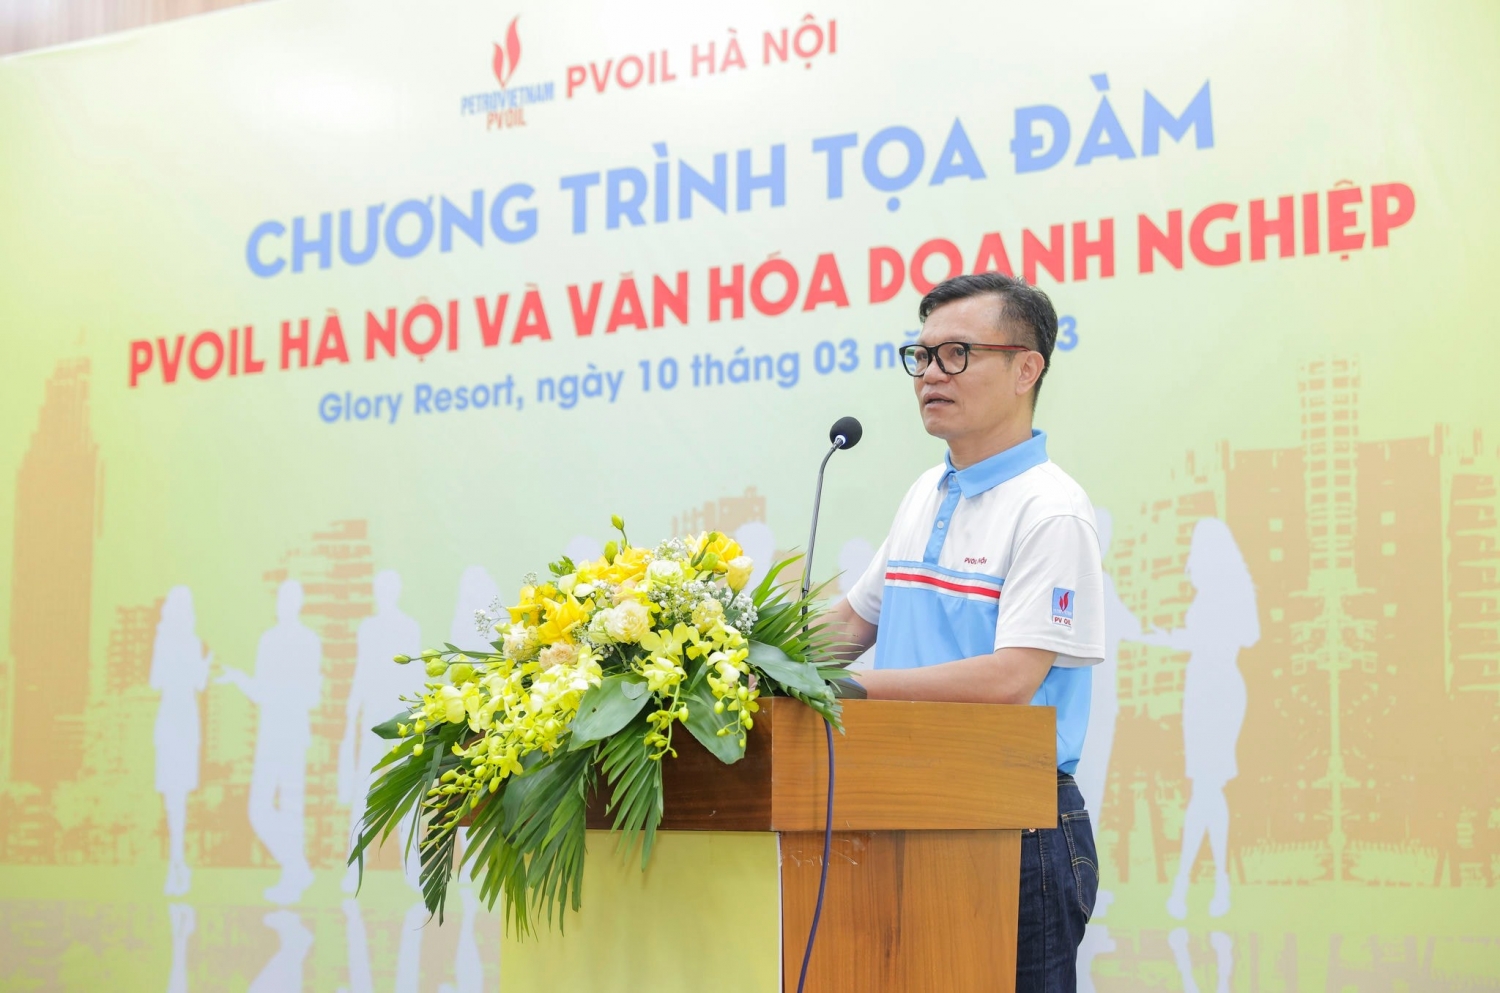 Ông Vũ Hoài Lam, Phó Tổng Giám đốc Tổng Công ty Dầu Việt Nam, Chủ tịch Hội đồng Quản trị Công ty chia sẻ về những định hướng cụ thể để phát triển văn hóa doanh nghiệp trong thời gian tới ở PVOIL Hà Nội.